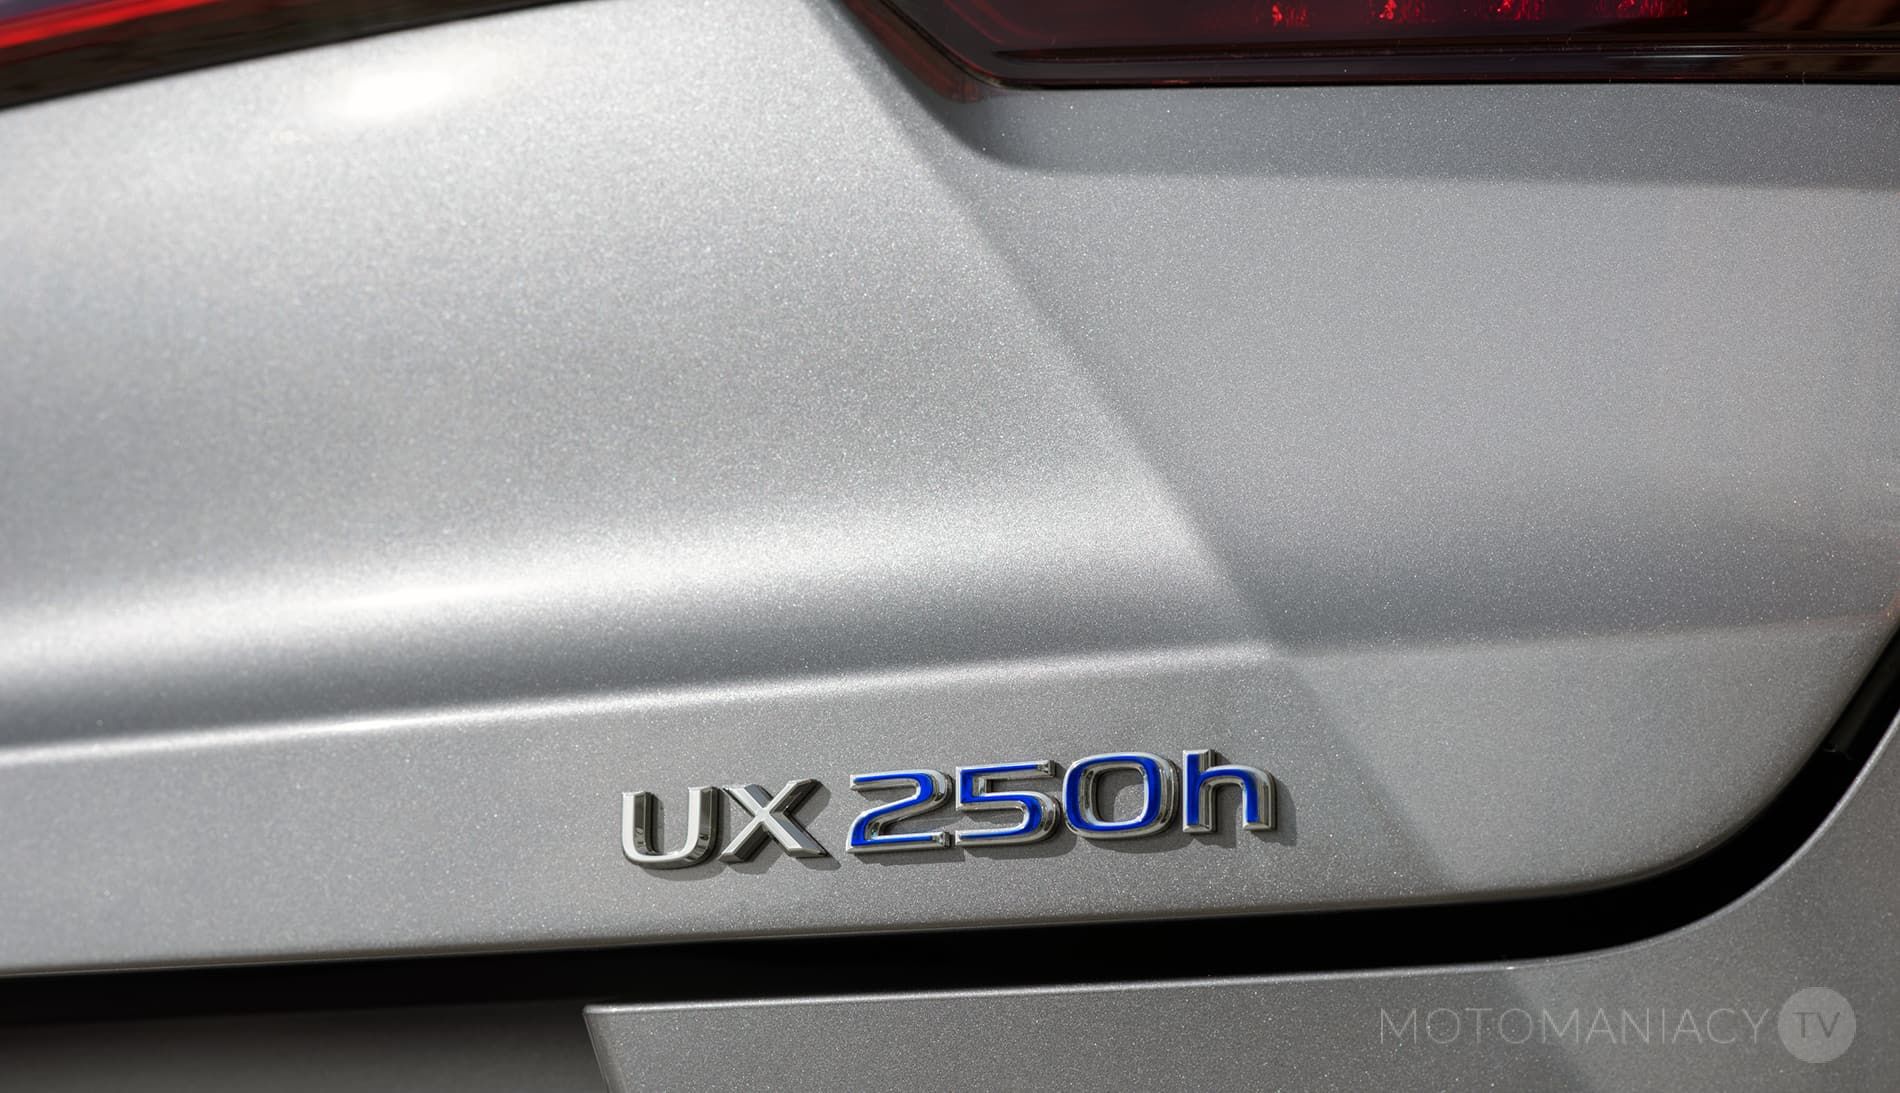 LEXUS UX 250h napęd hybrydowy czwartej generacji